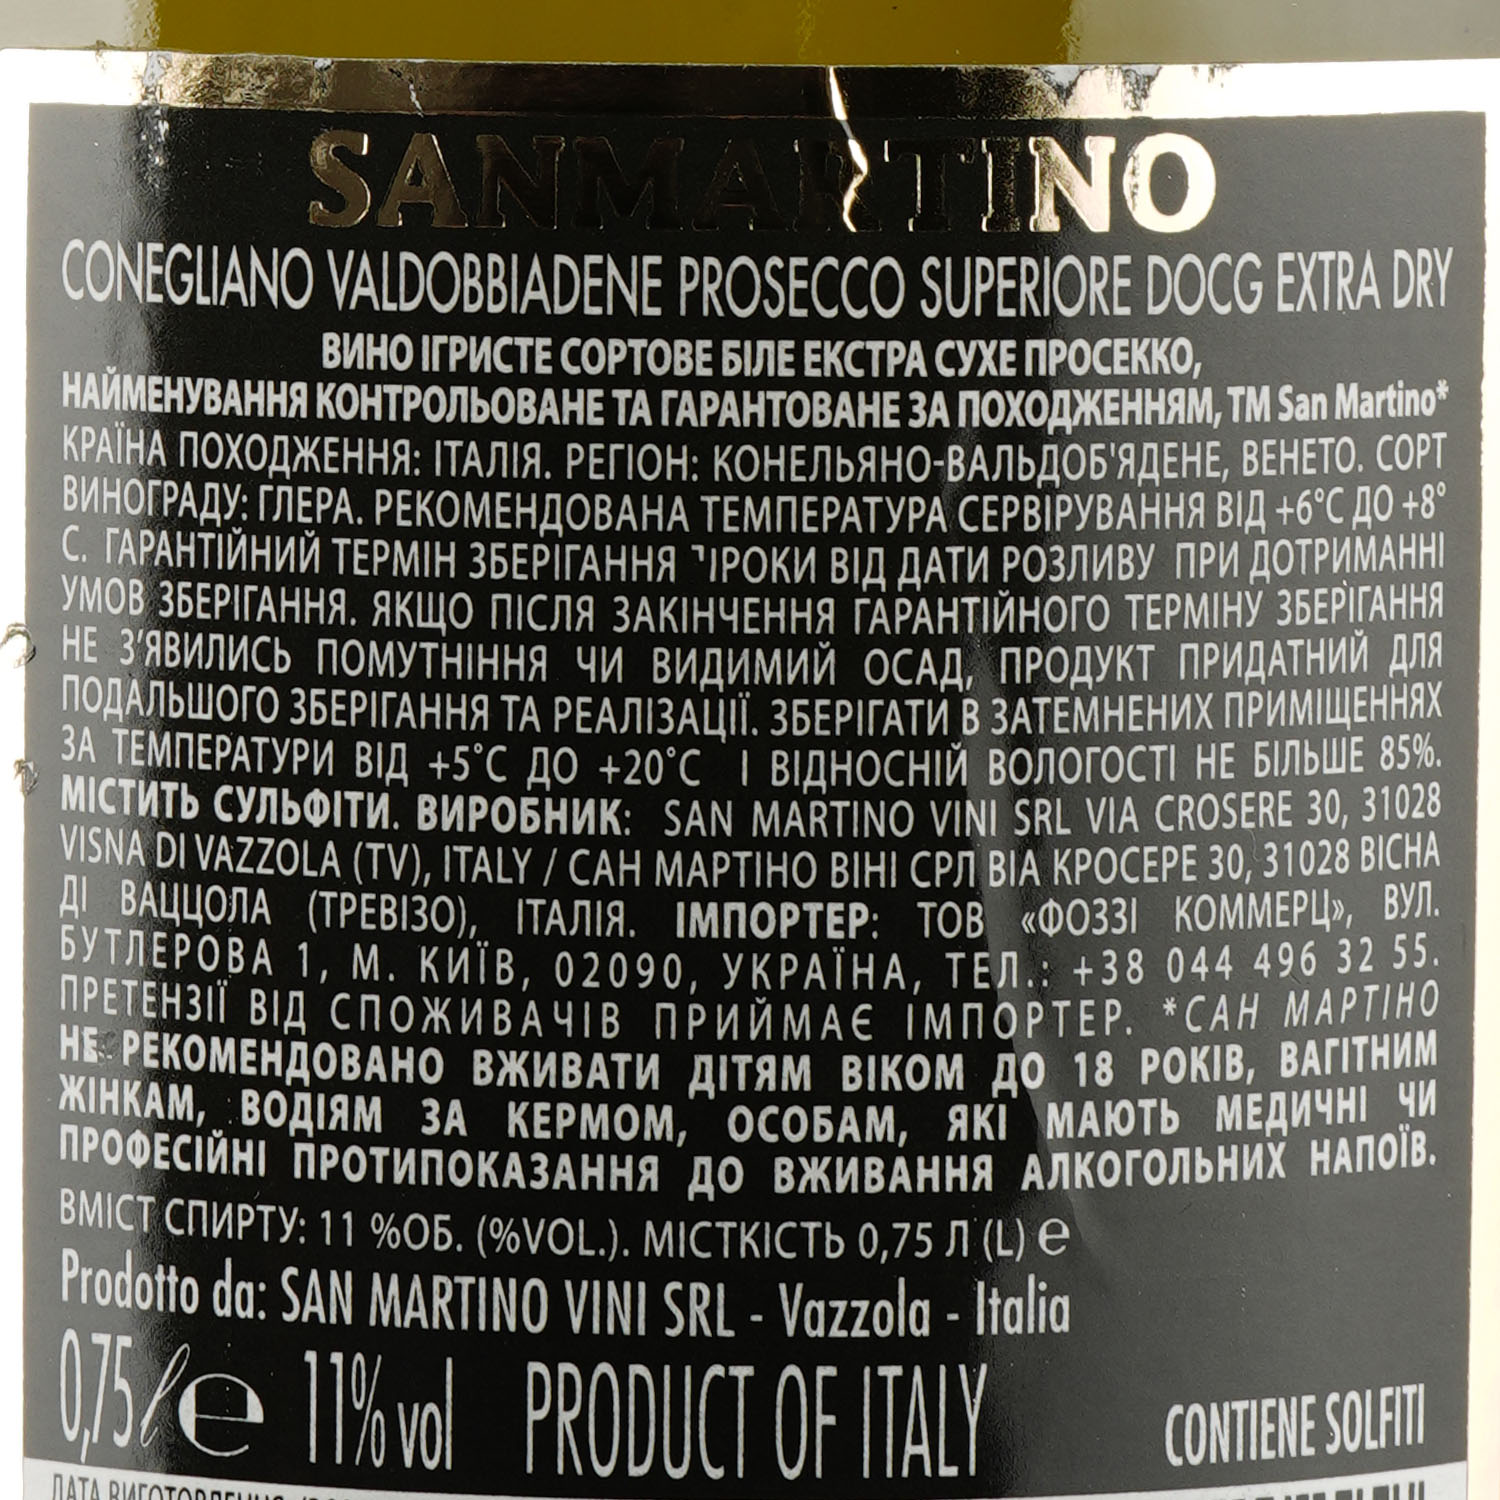 Вино ігристе San Martino Prosecco Valdobbiadene Prosecco Superiore DOCG, белое, брют, 0,75 л - фото 3